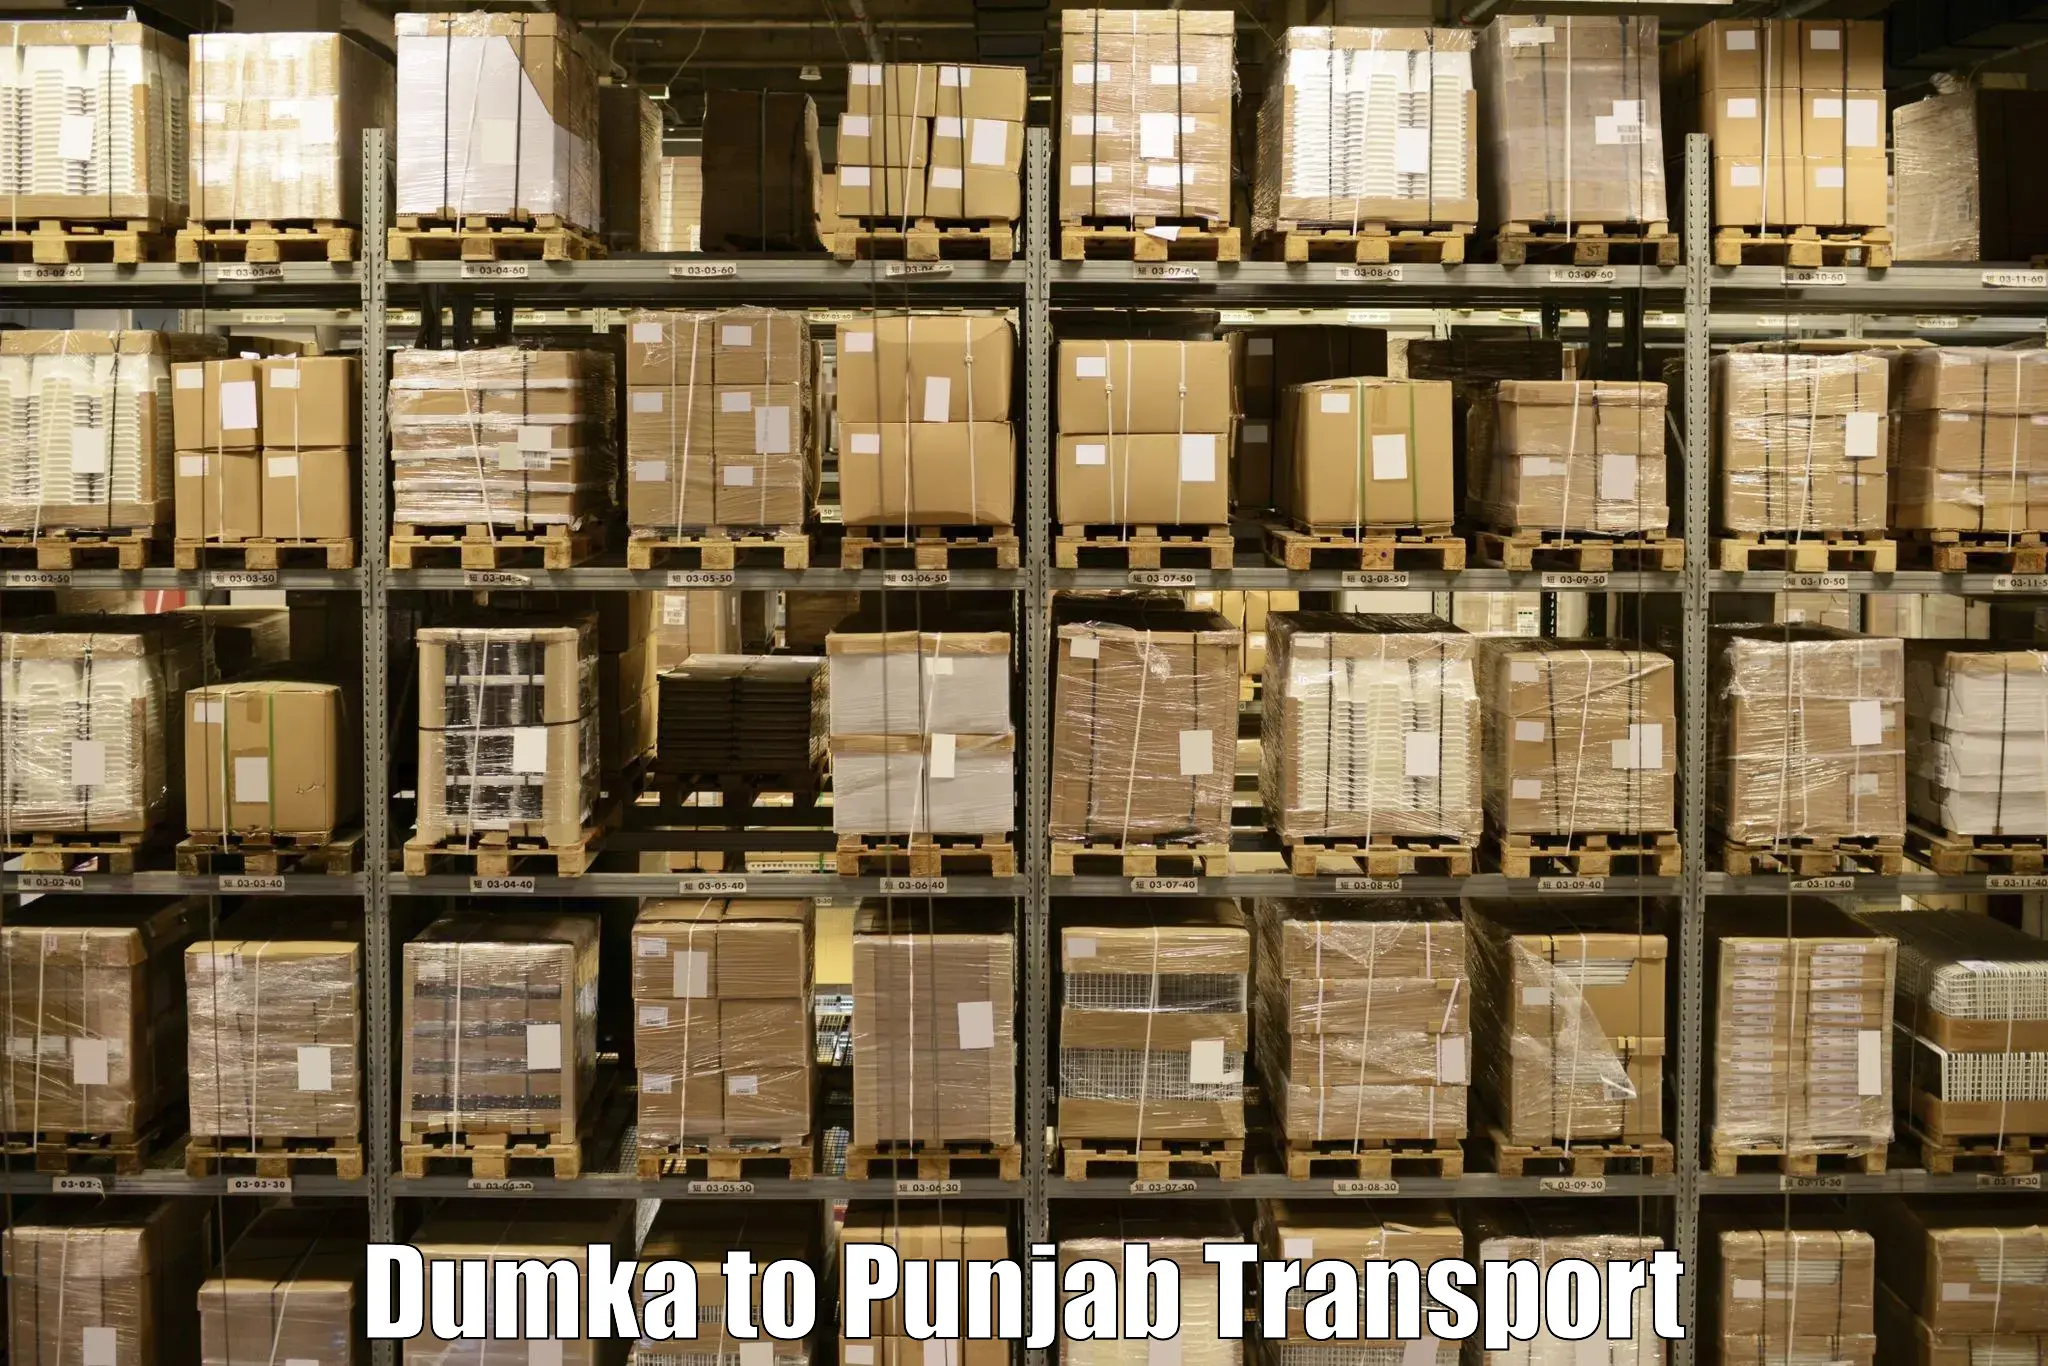 Cycle transportation service Dumka to Nabha